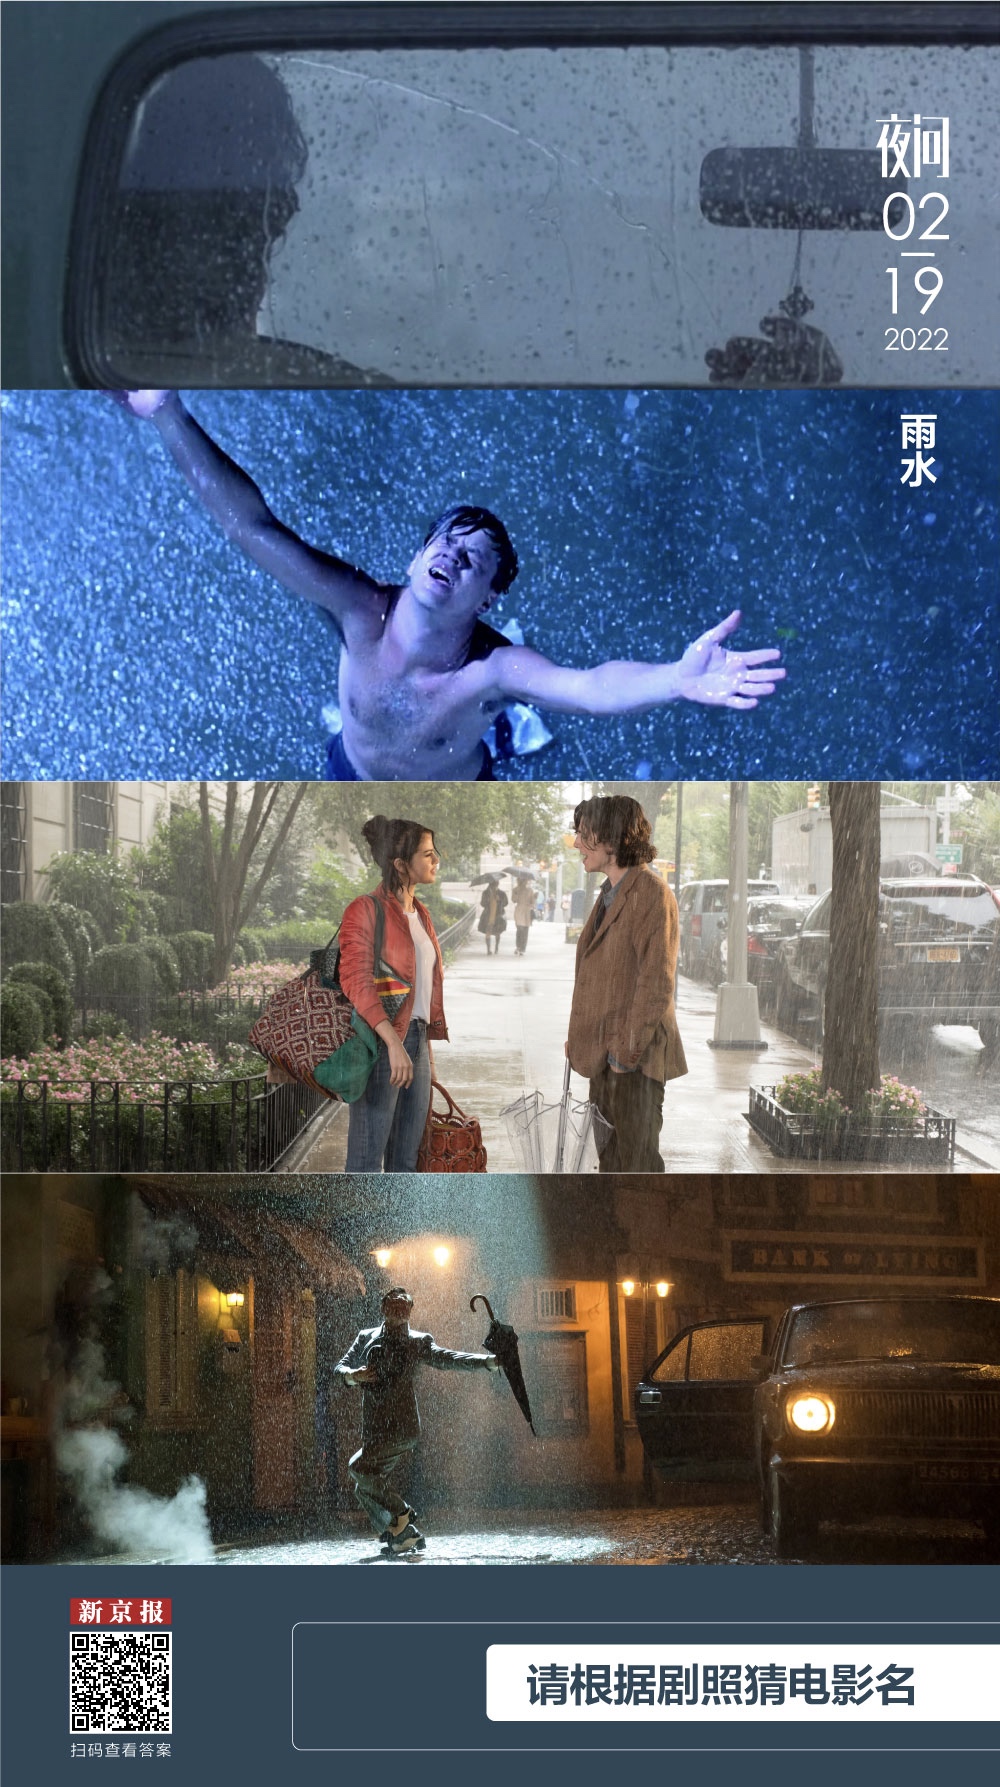 雨水时节，猜猜这些雨中场景来自哪几部电影？丨夜问